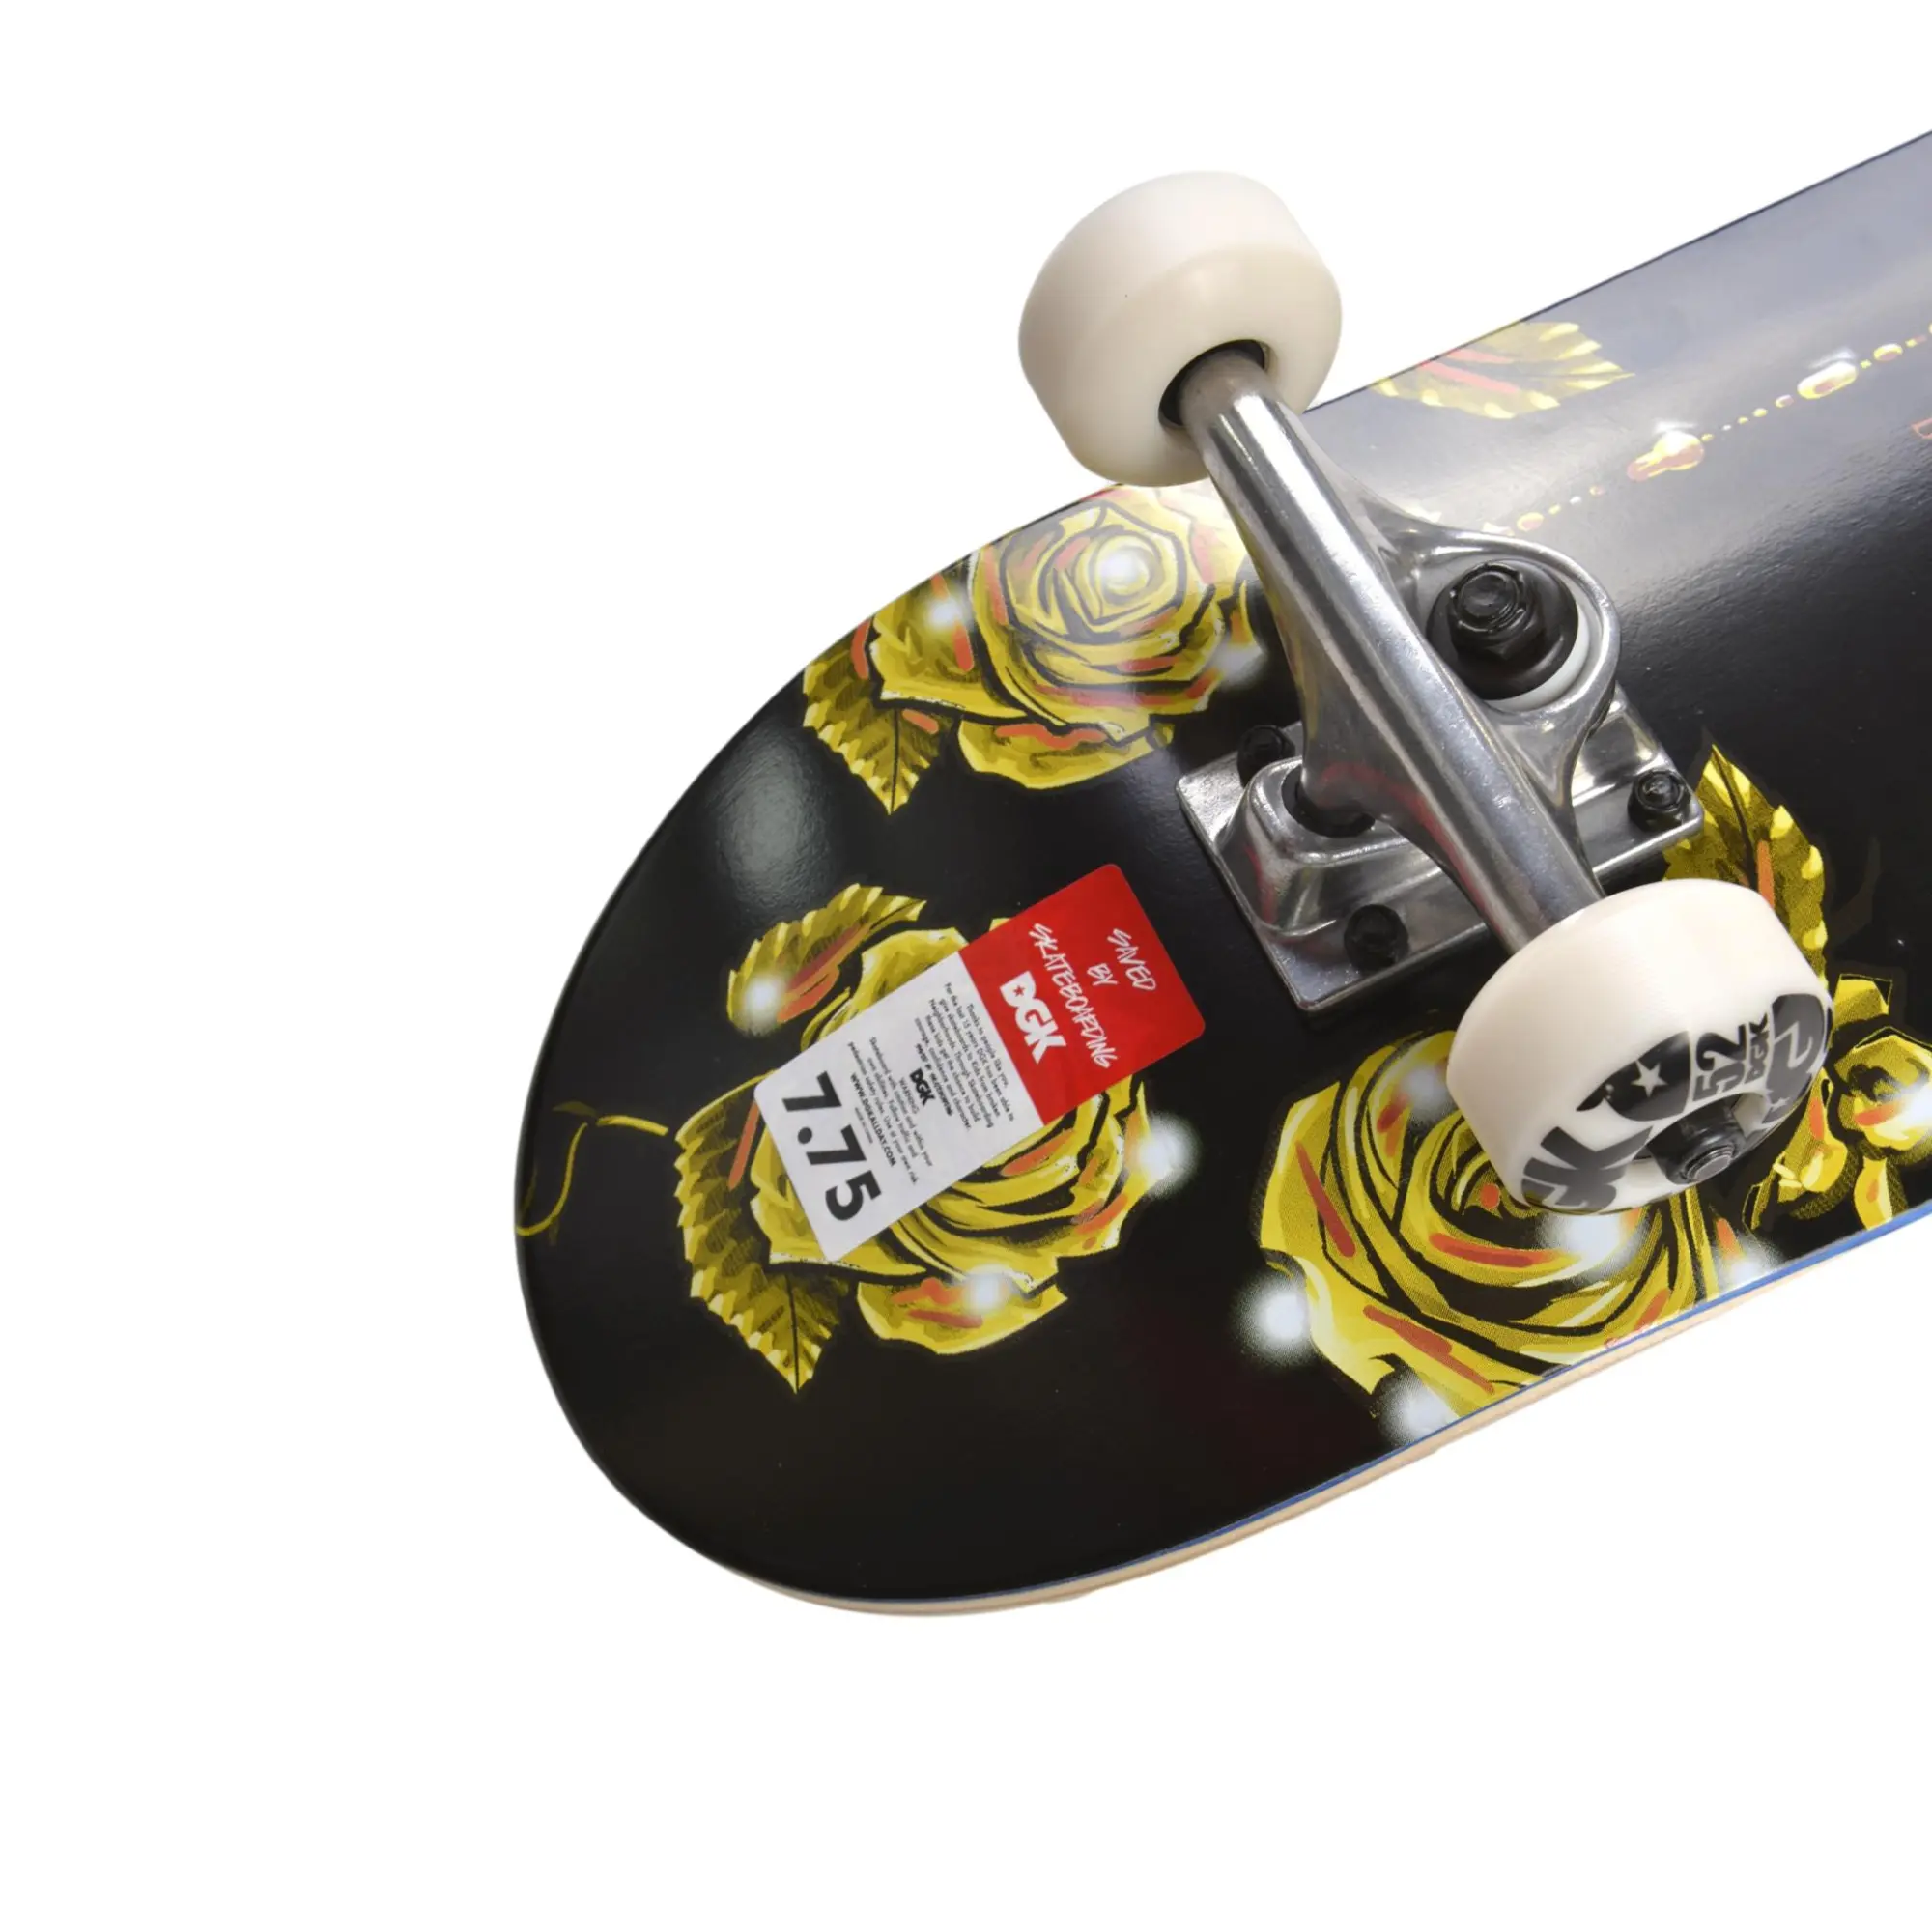 Dgk Skateboard Completo Blessed 7.75